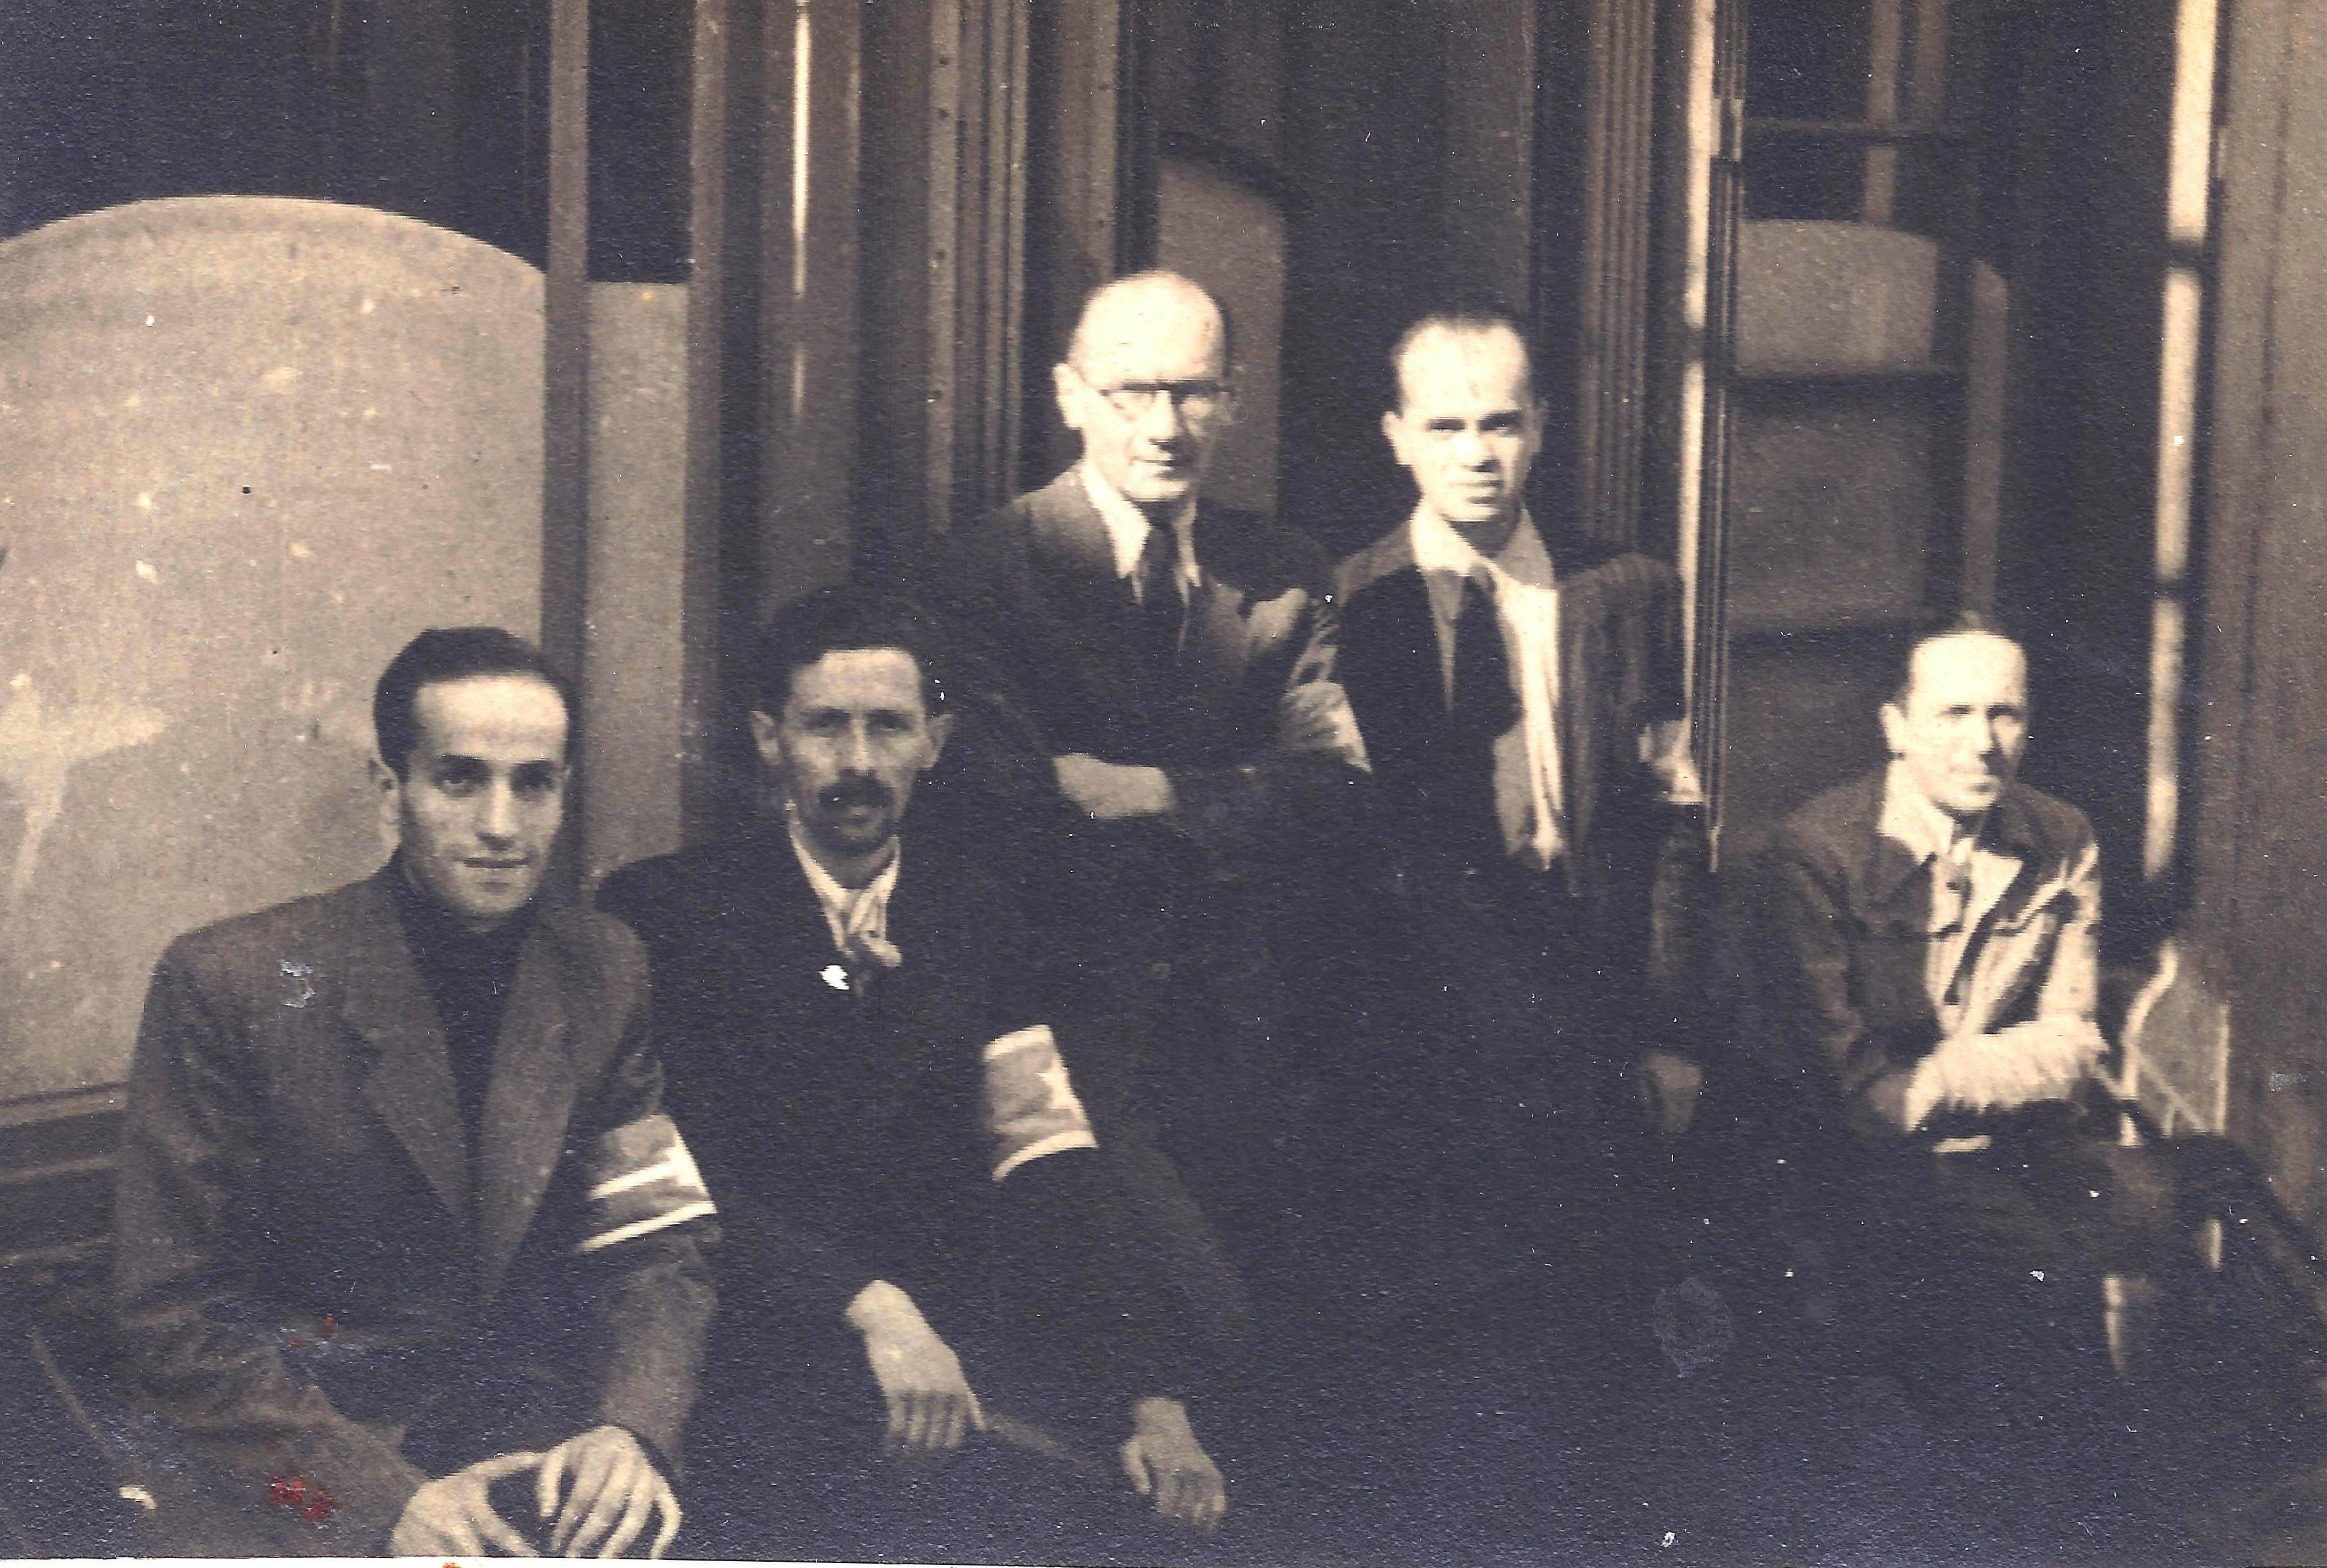 תצלום קבוצתי של שוטרי "משמר הגטו", 1942-1943 בערך